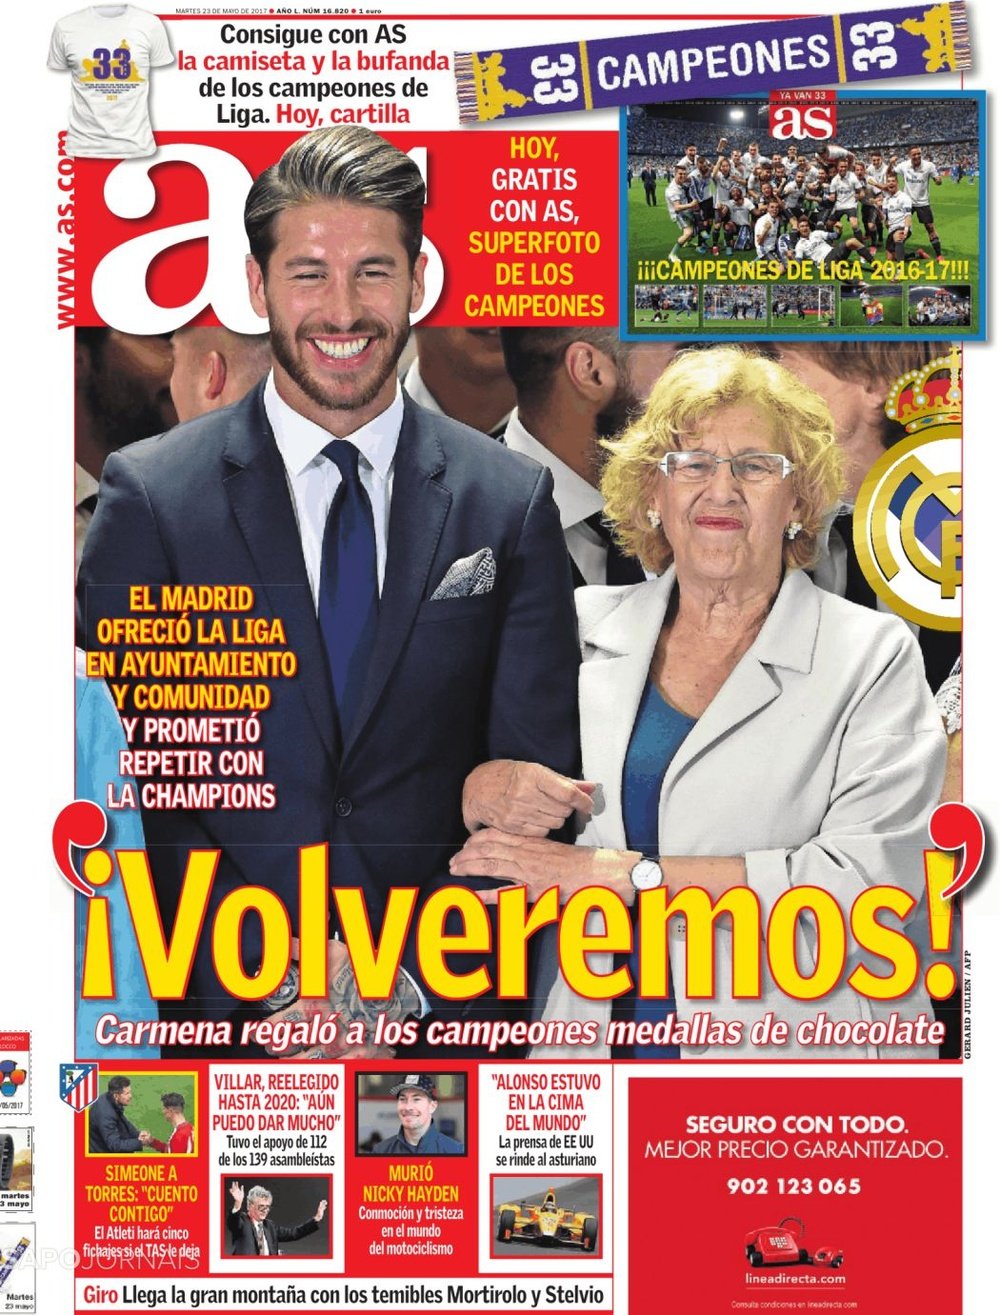 La Une du quotidien sportif espagnol 'AS' du 23-05-17. AS